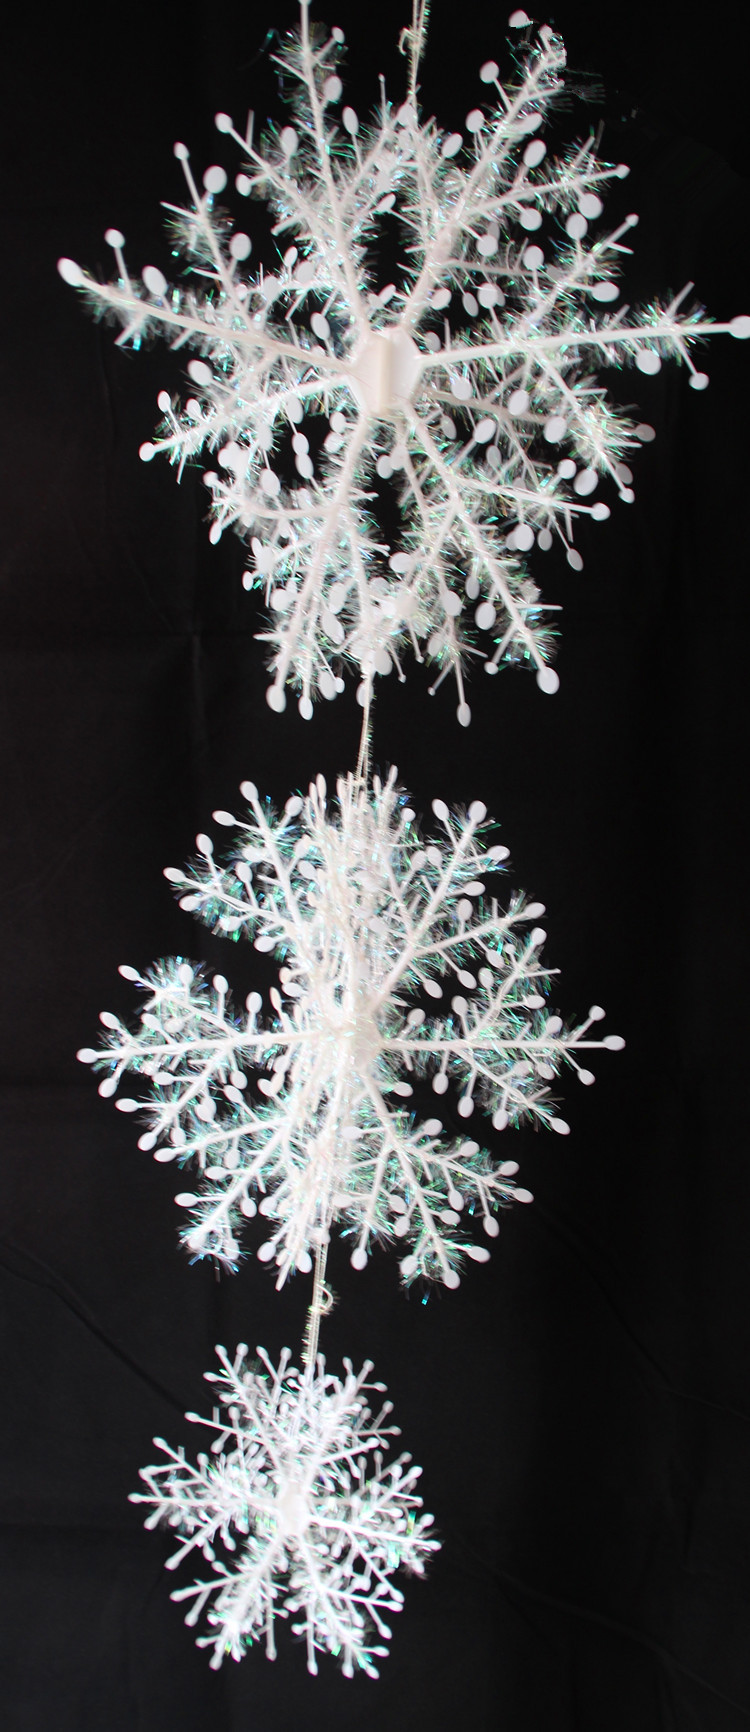 圣誕雪花片 圣誕節裝飾 活動用品 立體雪花串 繞線立體雪花串